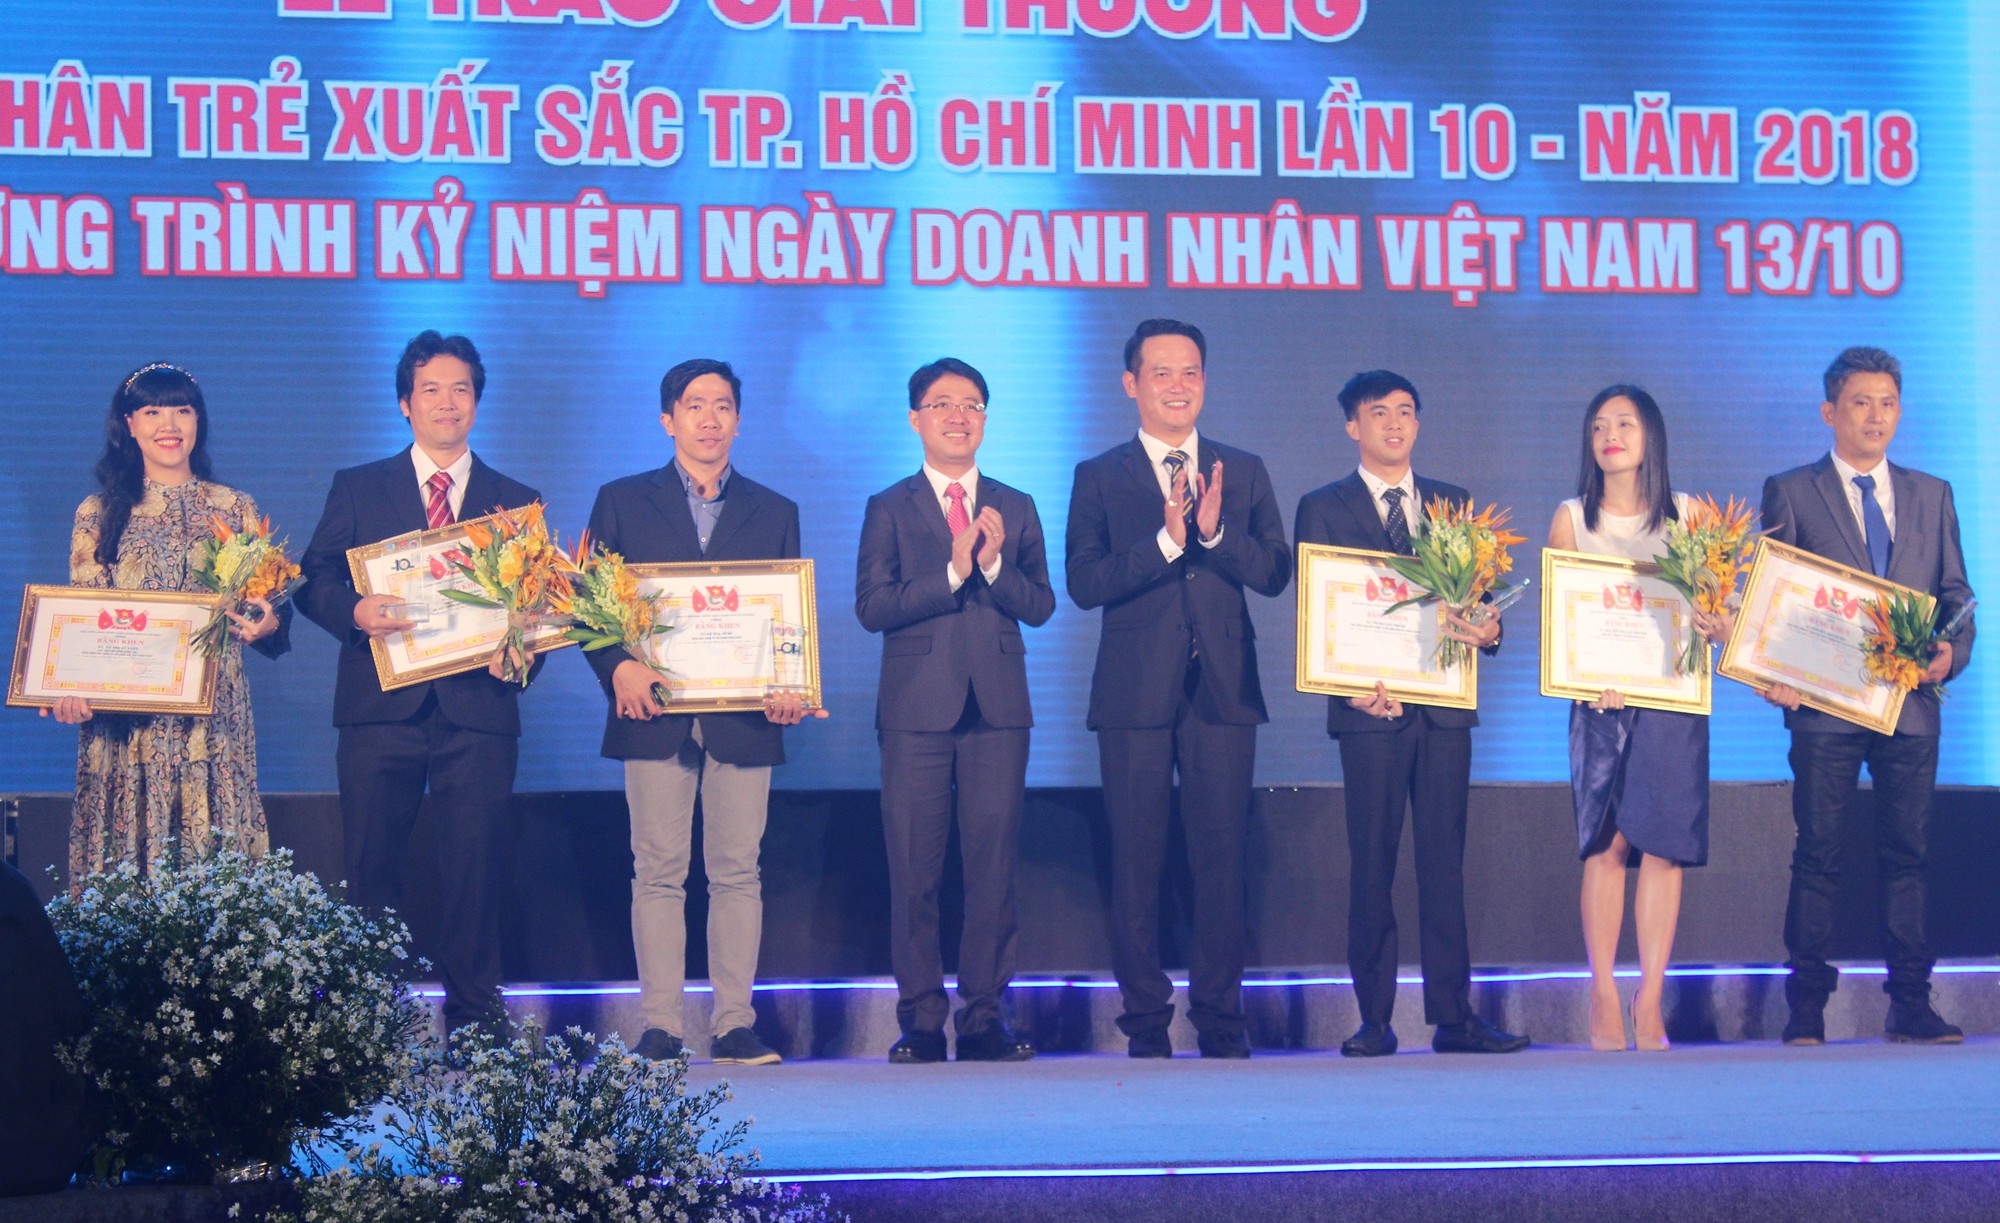 17 doanh nhân được vinh danh trong lễ trao giải thưởng “Doanh nhân trẻ xuất sắc Tp.HCM lần 10 năm 2018” - Ảnh 3.